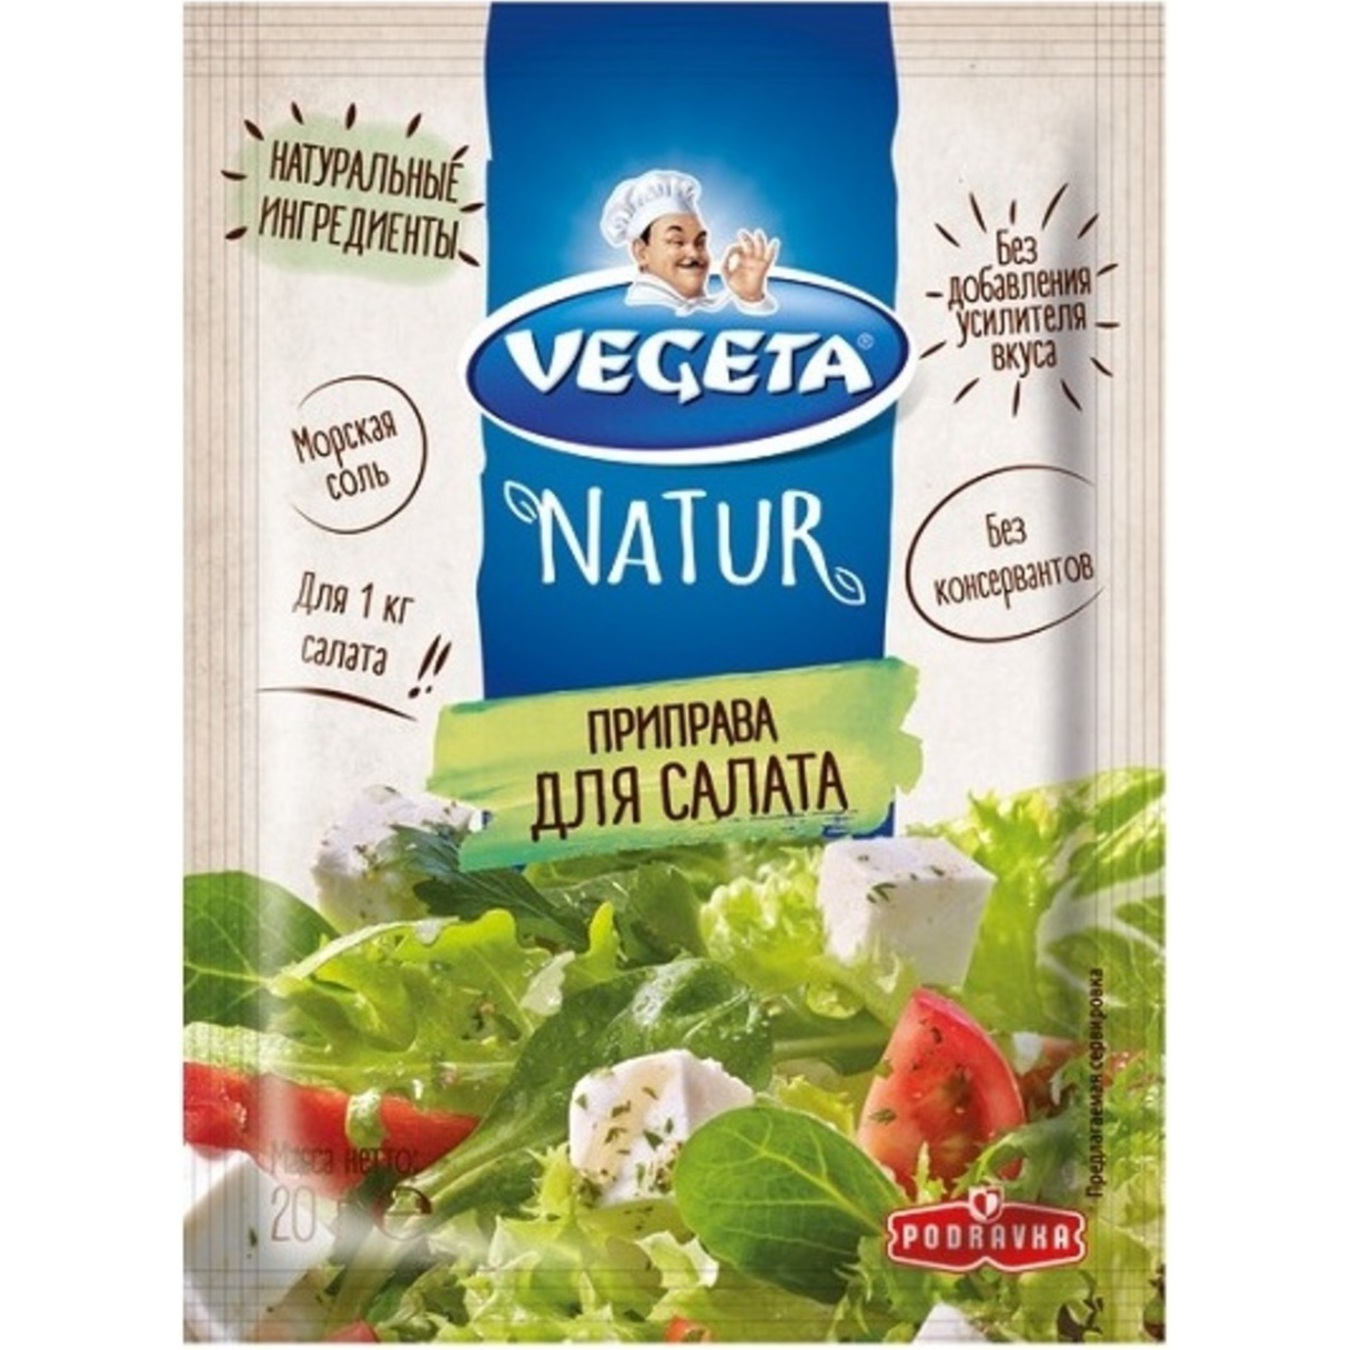 Vegeta for salad vegetable spices 20g